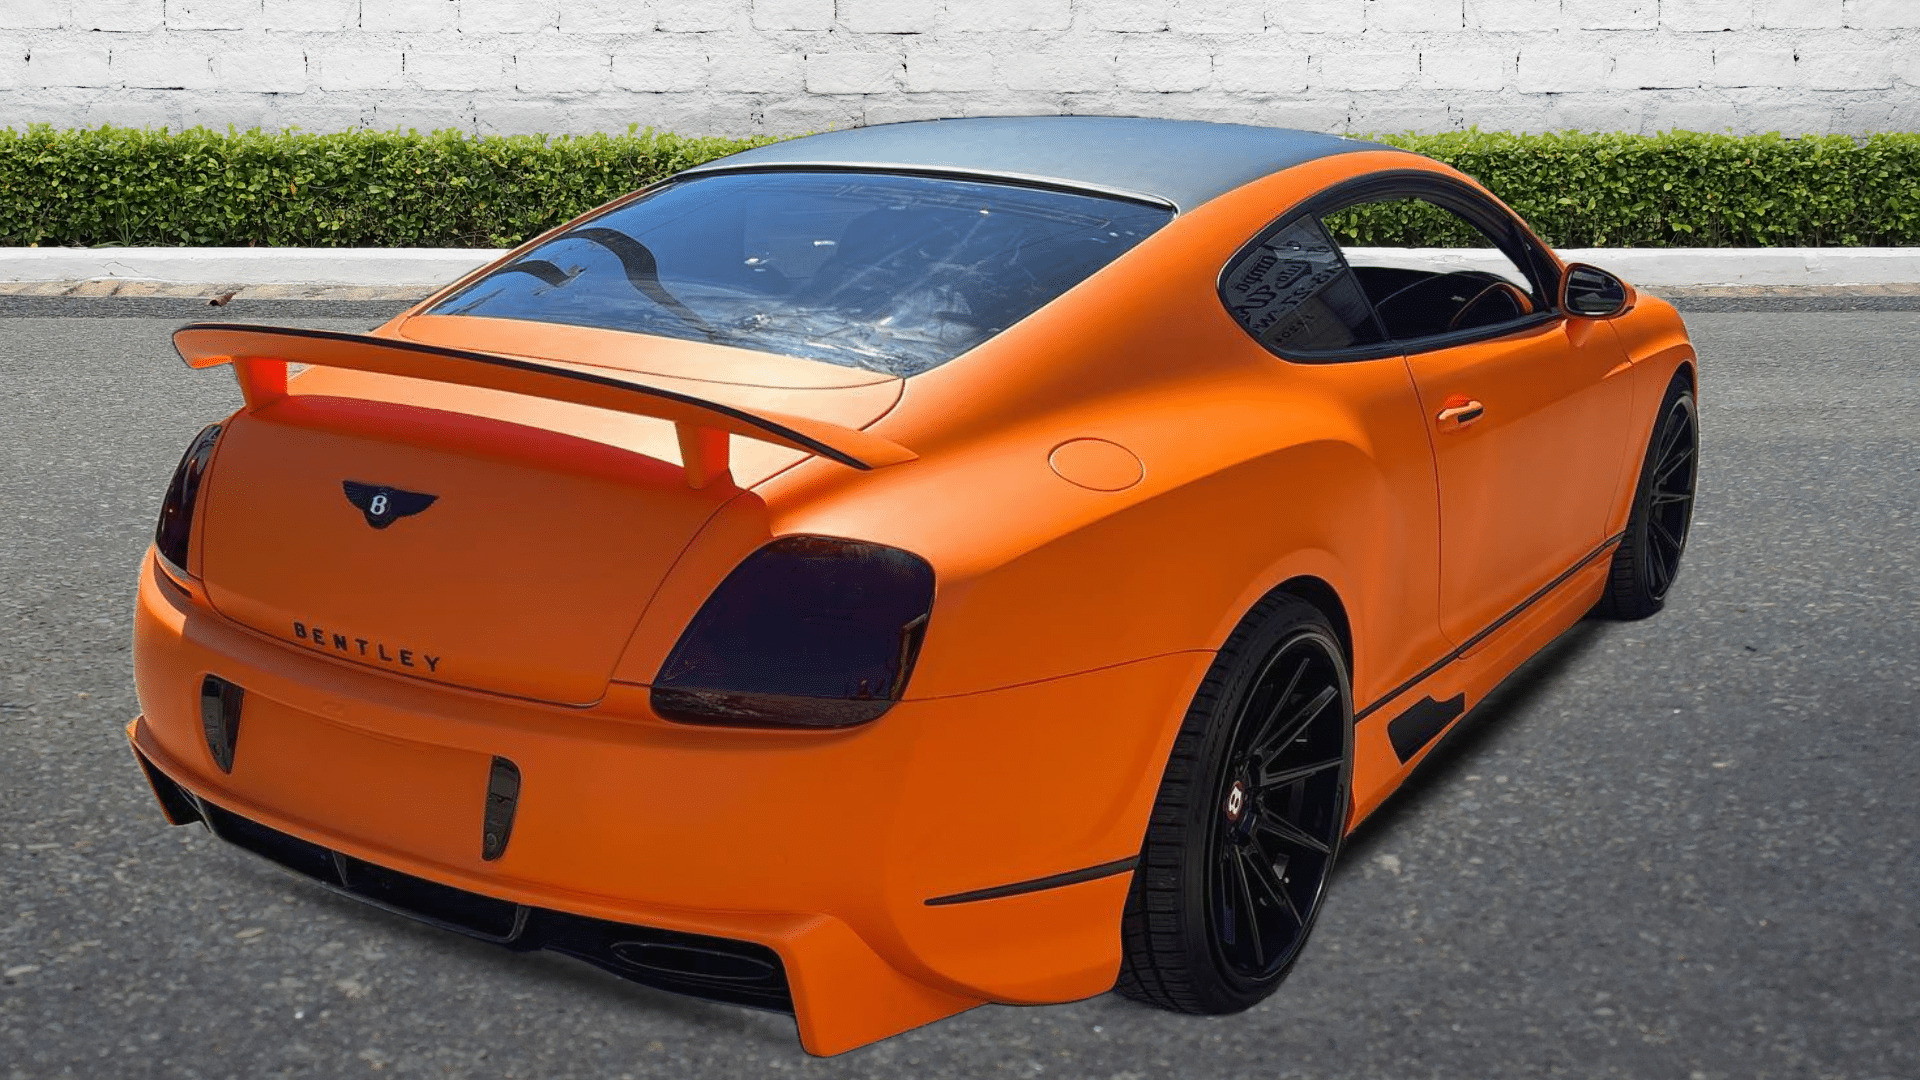 Bentley Orange Full Car Wrap